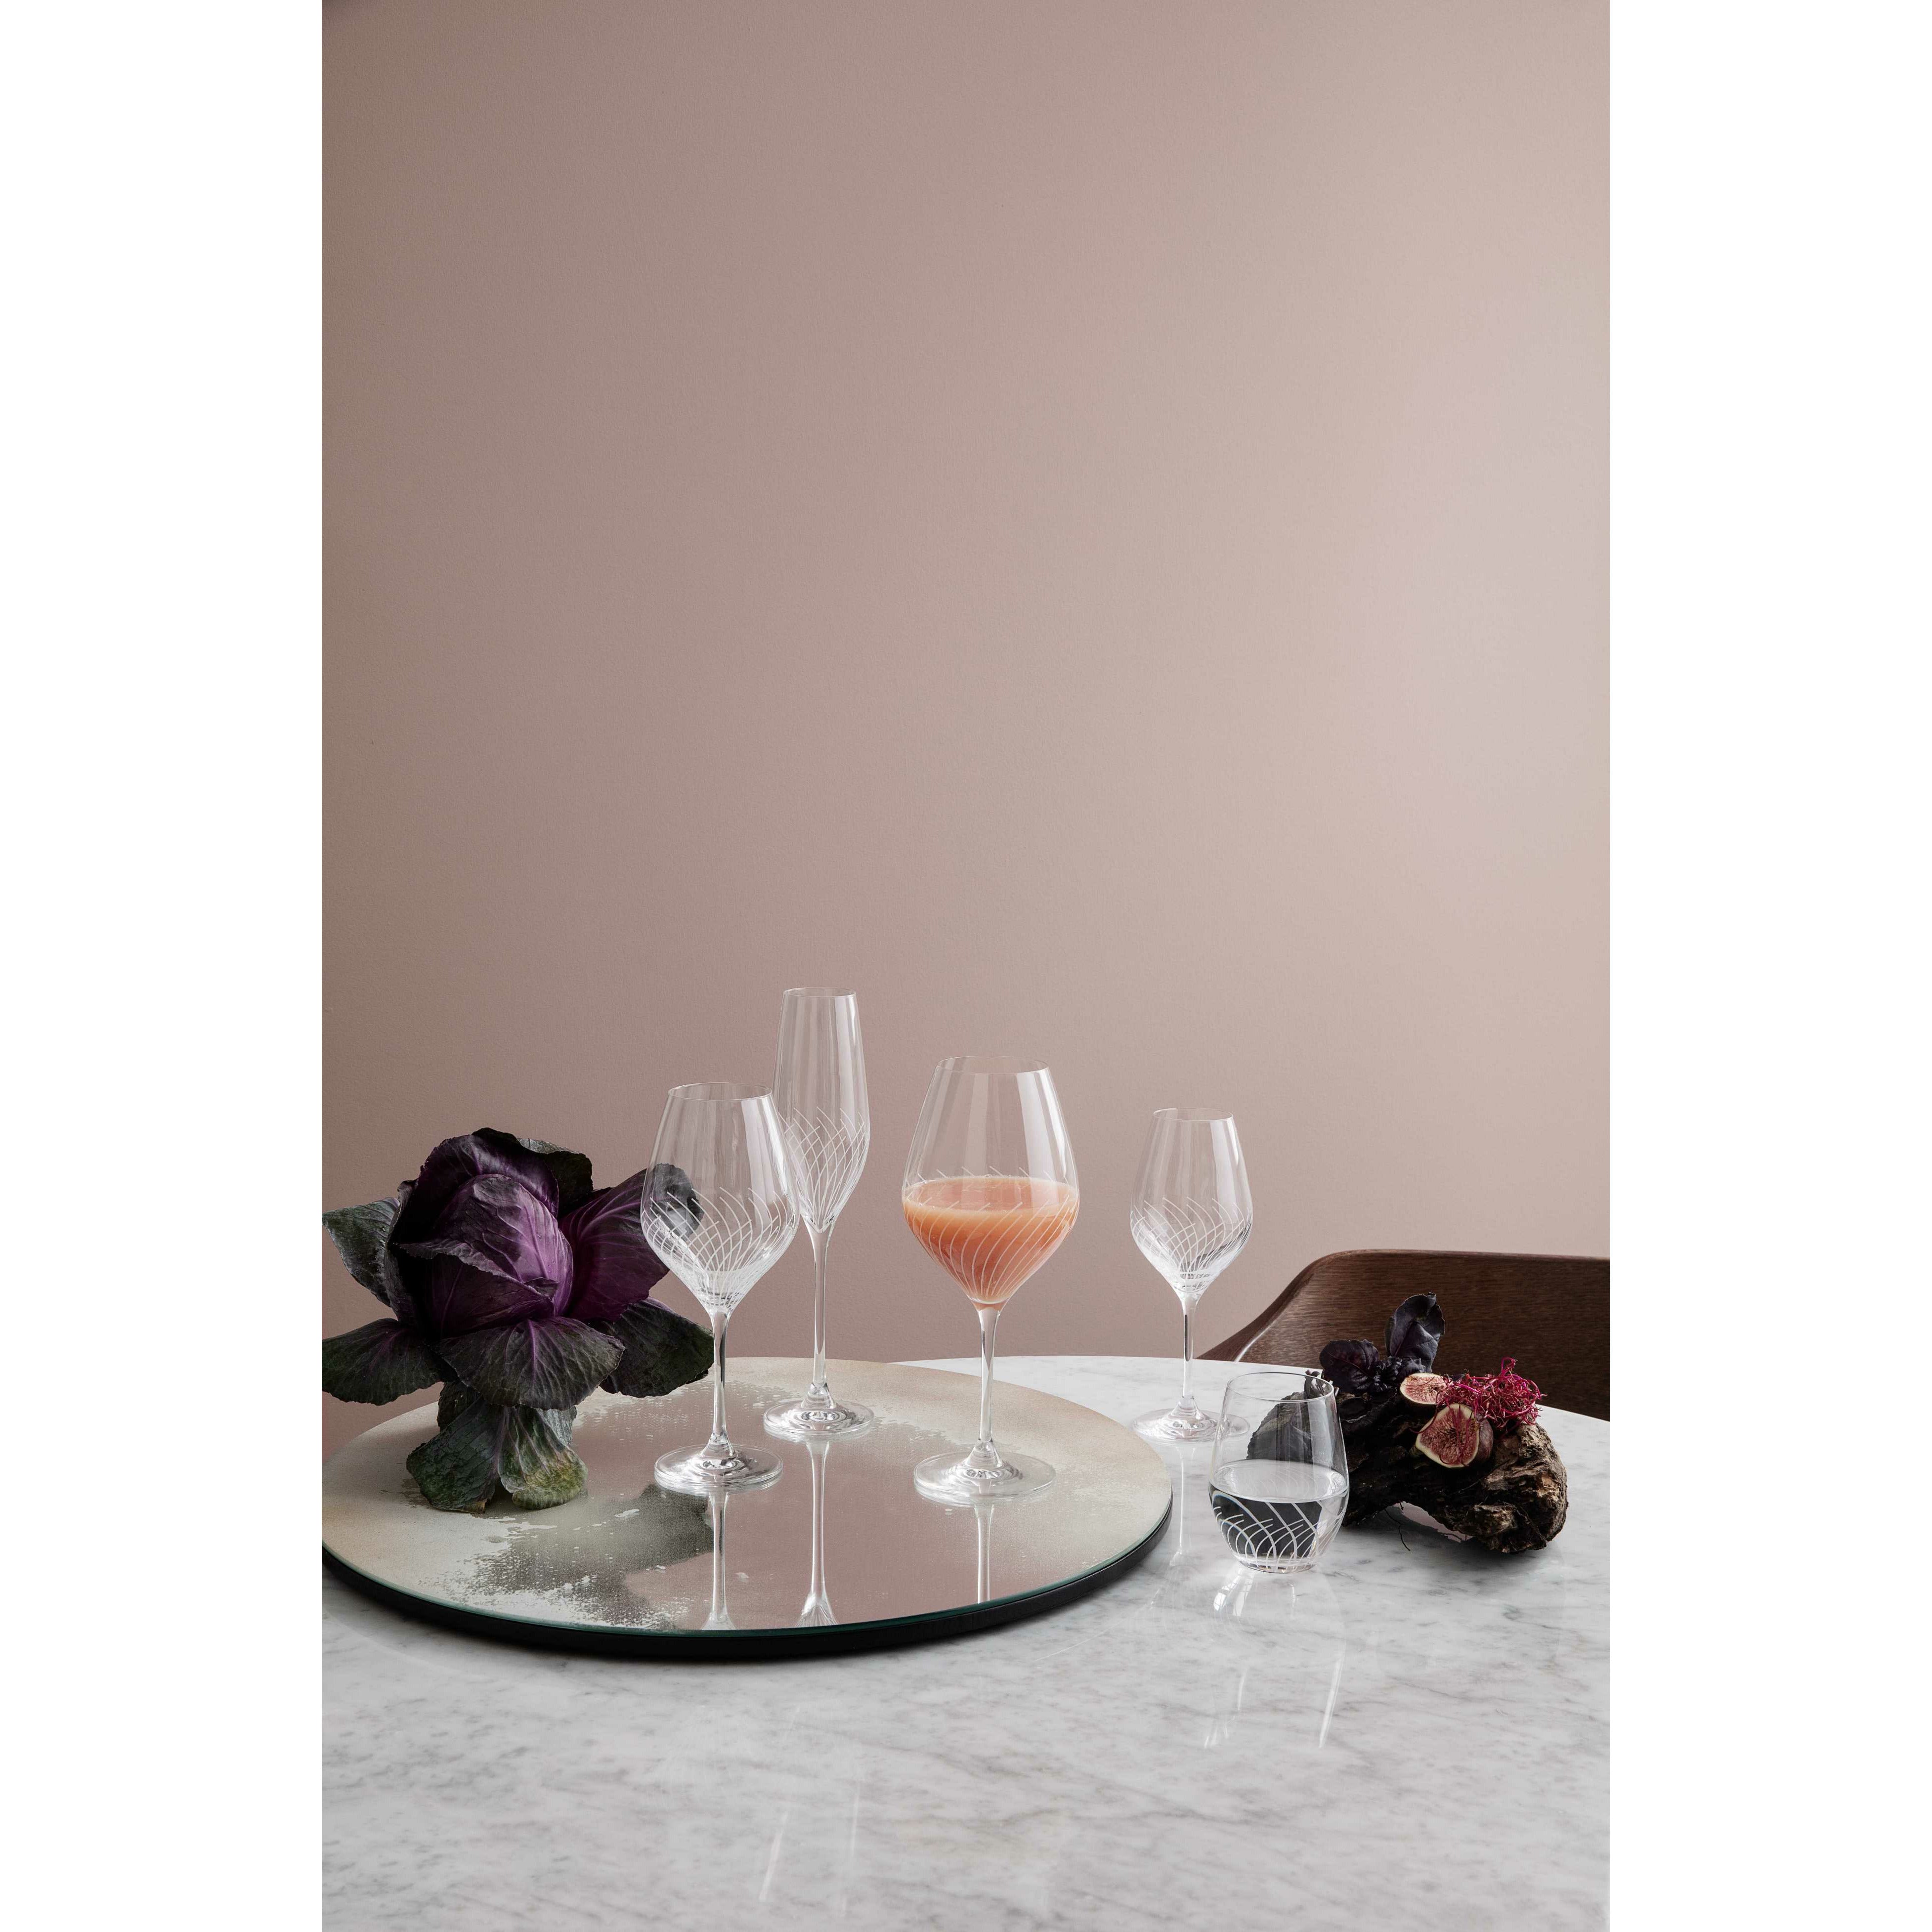 Holmegaard Cabernet -lijnen rood wijnglas, 2 pc's.